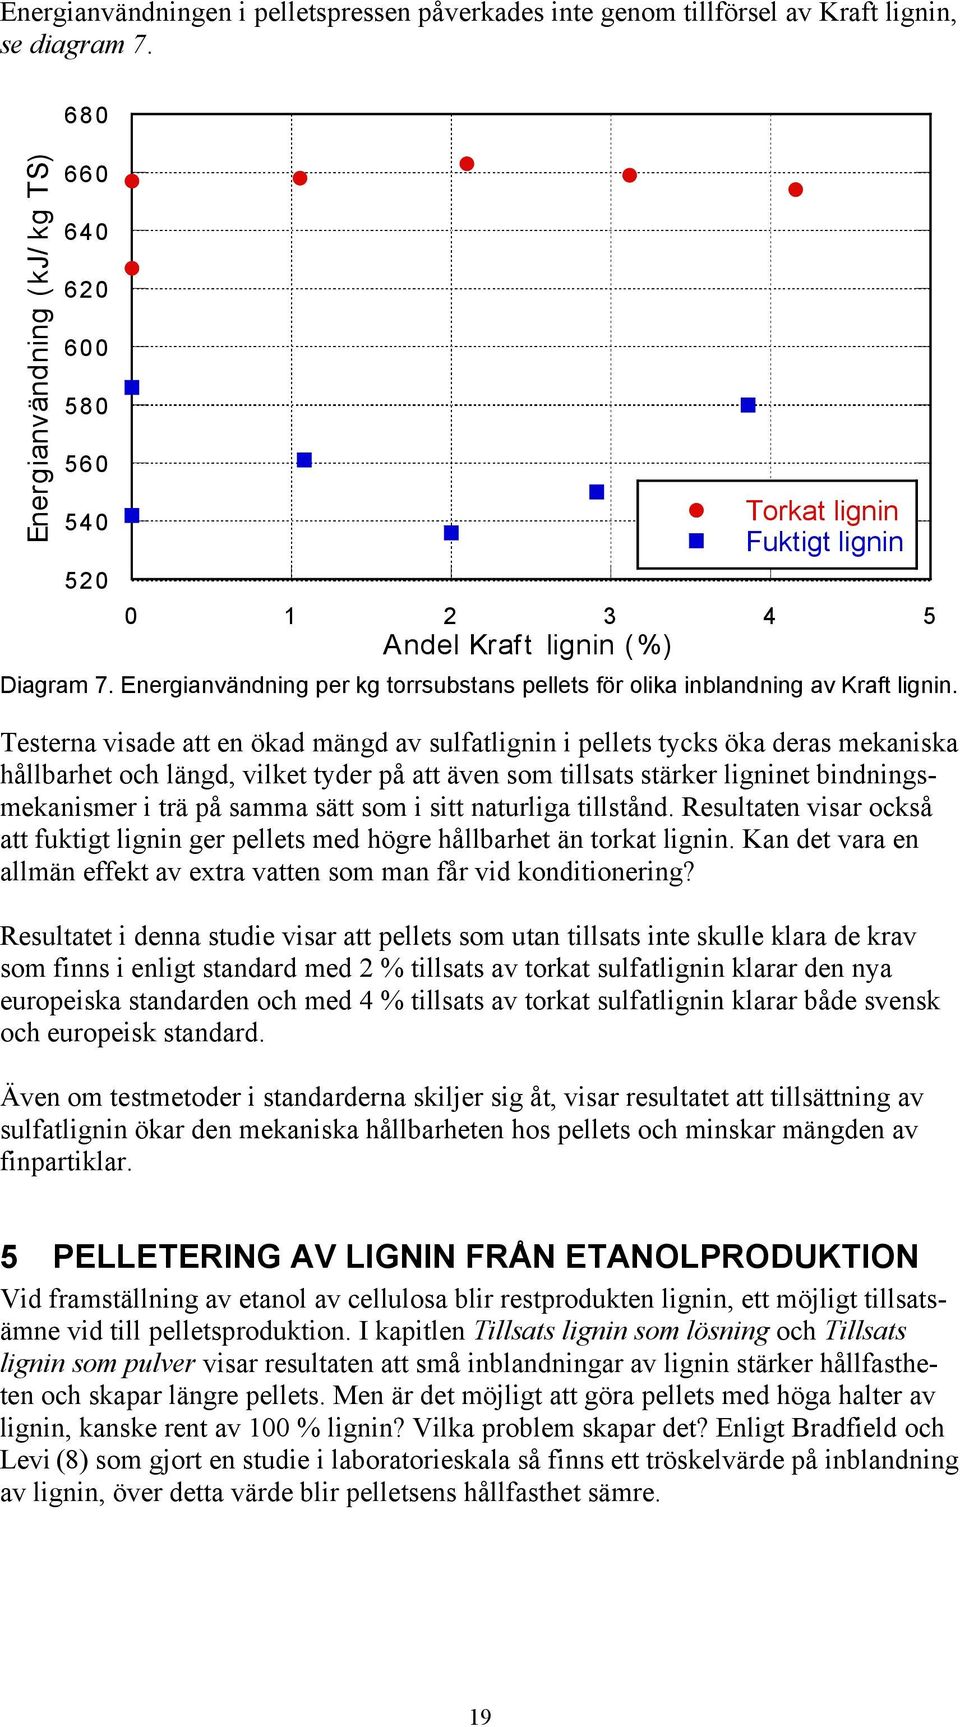 Energianvändning per kg torrsubstans pellets för olika inblandning av Kraft lignin.